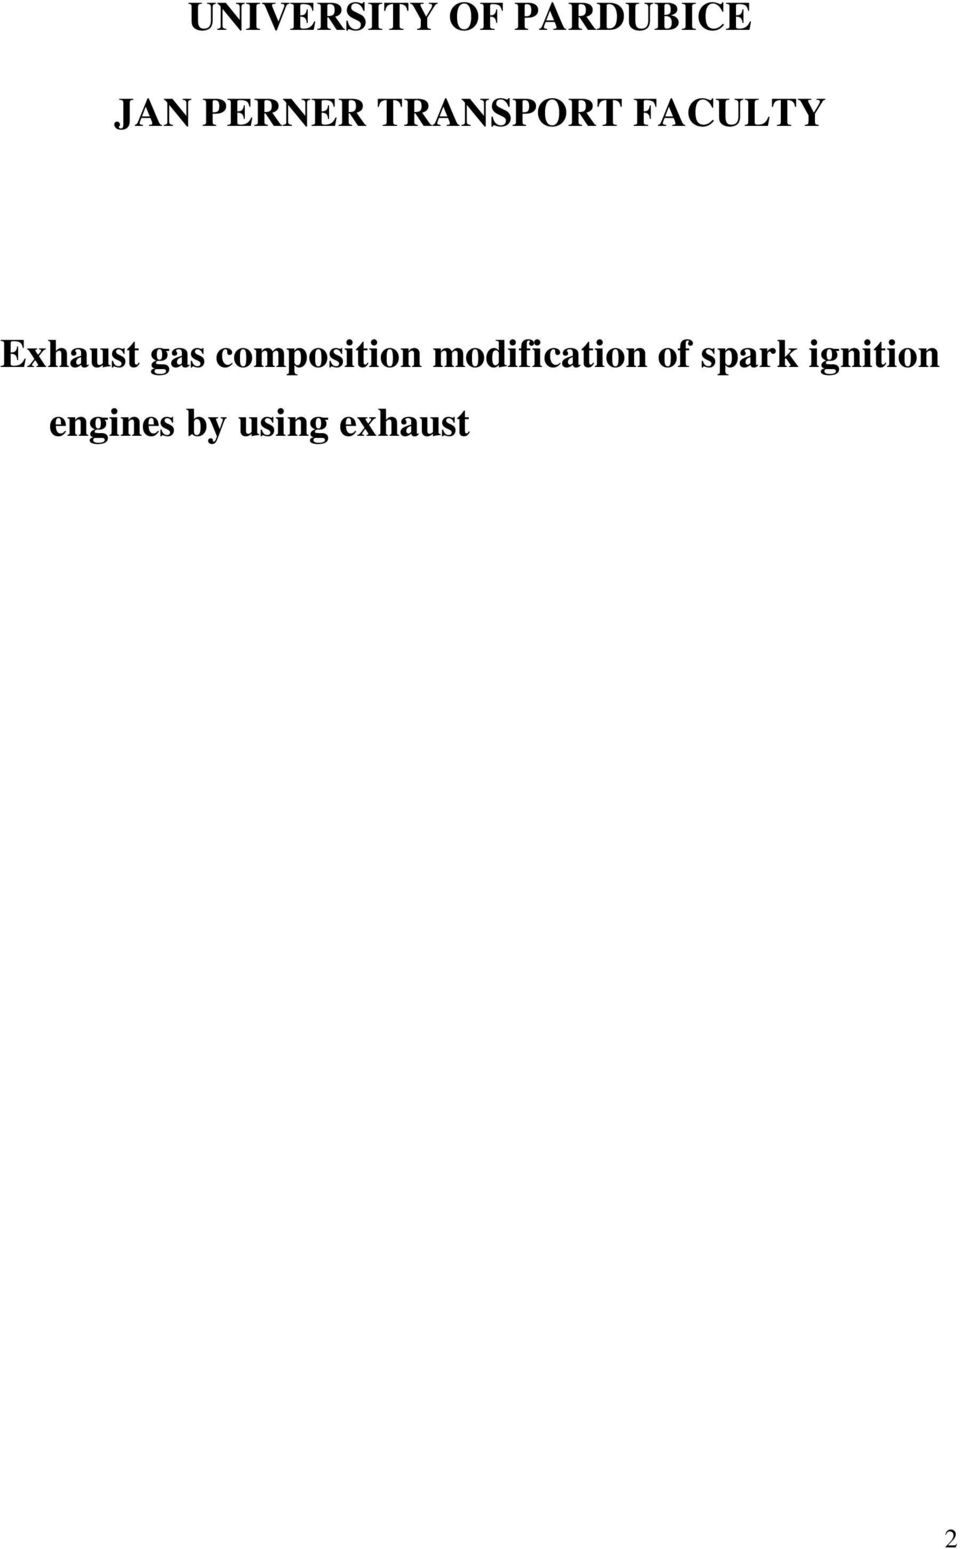 using exhaust gas catalyst materiál education gadget BACHELOR